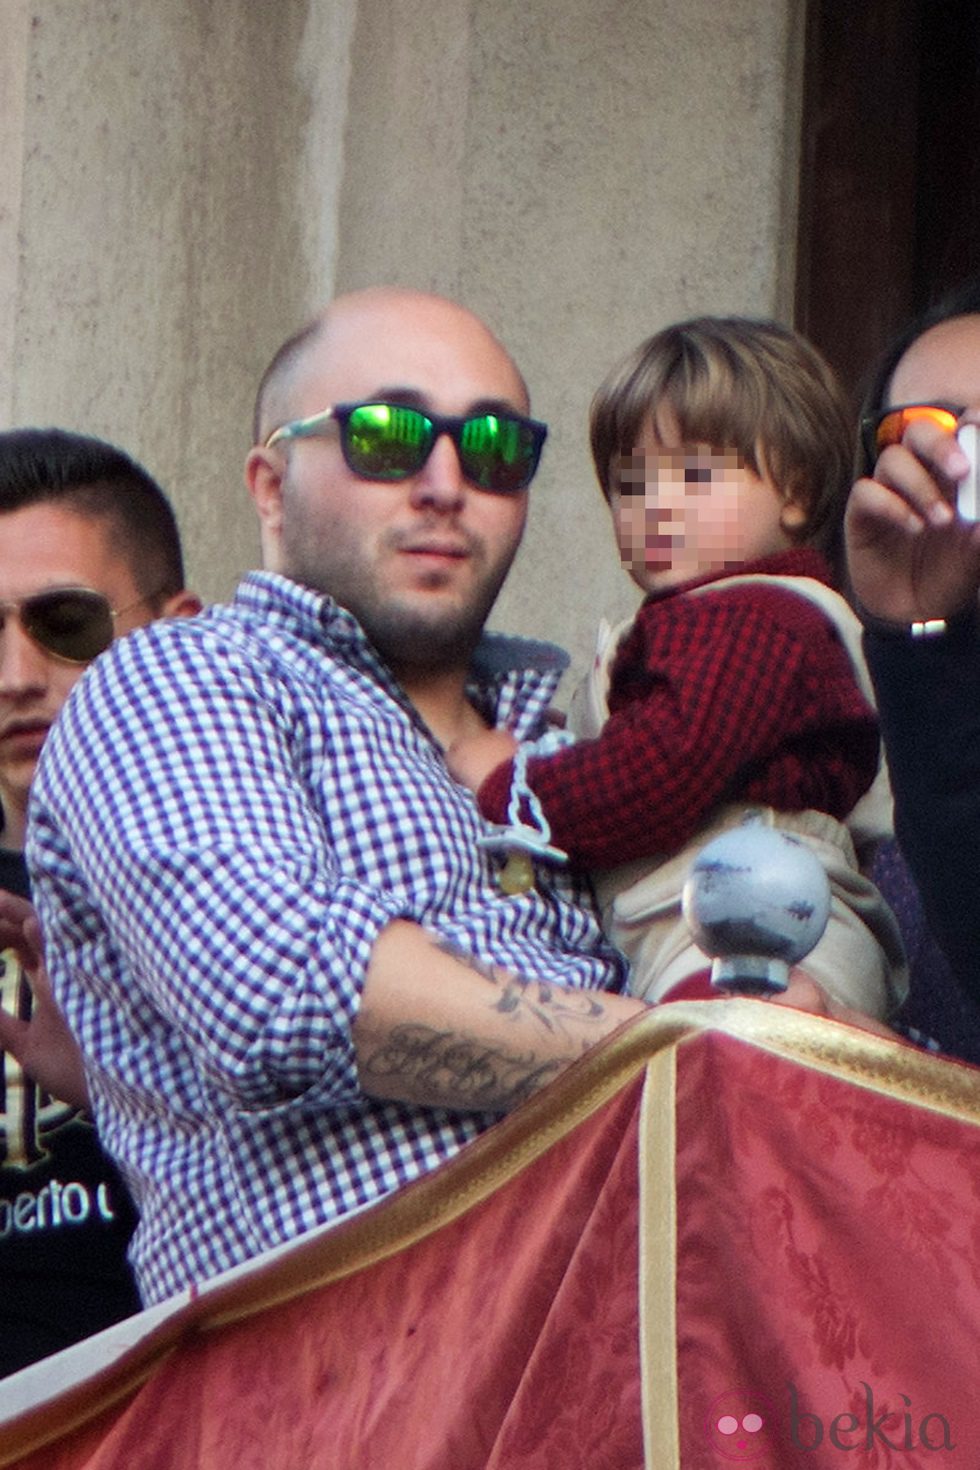 Kiko Rivera y su hijo Francisco en la Semana Santa de Sevilla 2014